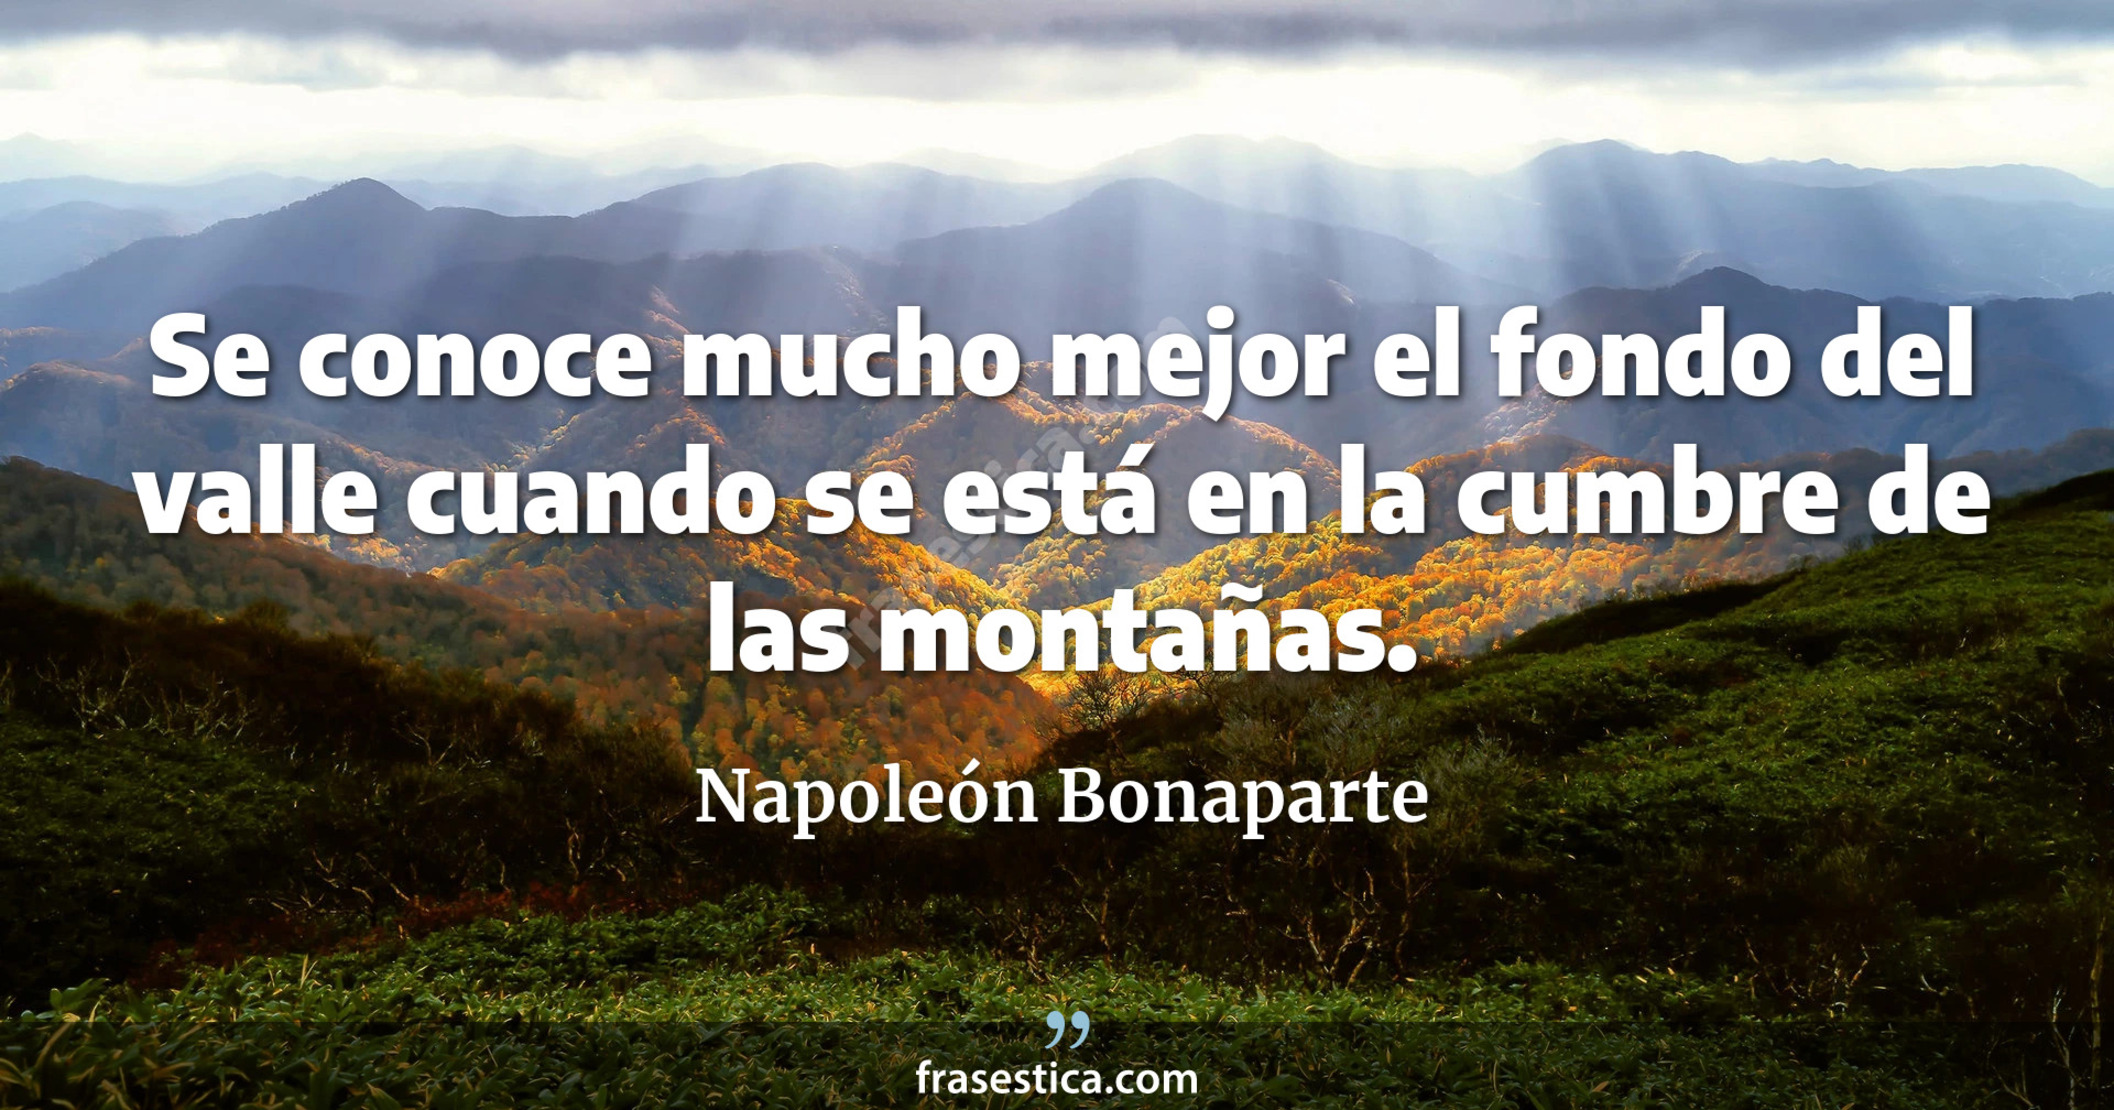 Se conoce mucho mejor el fondo del valle cuando se está en la cumbre de las montañas. - Napoleón Bonaparte